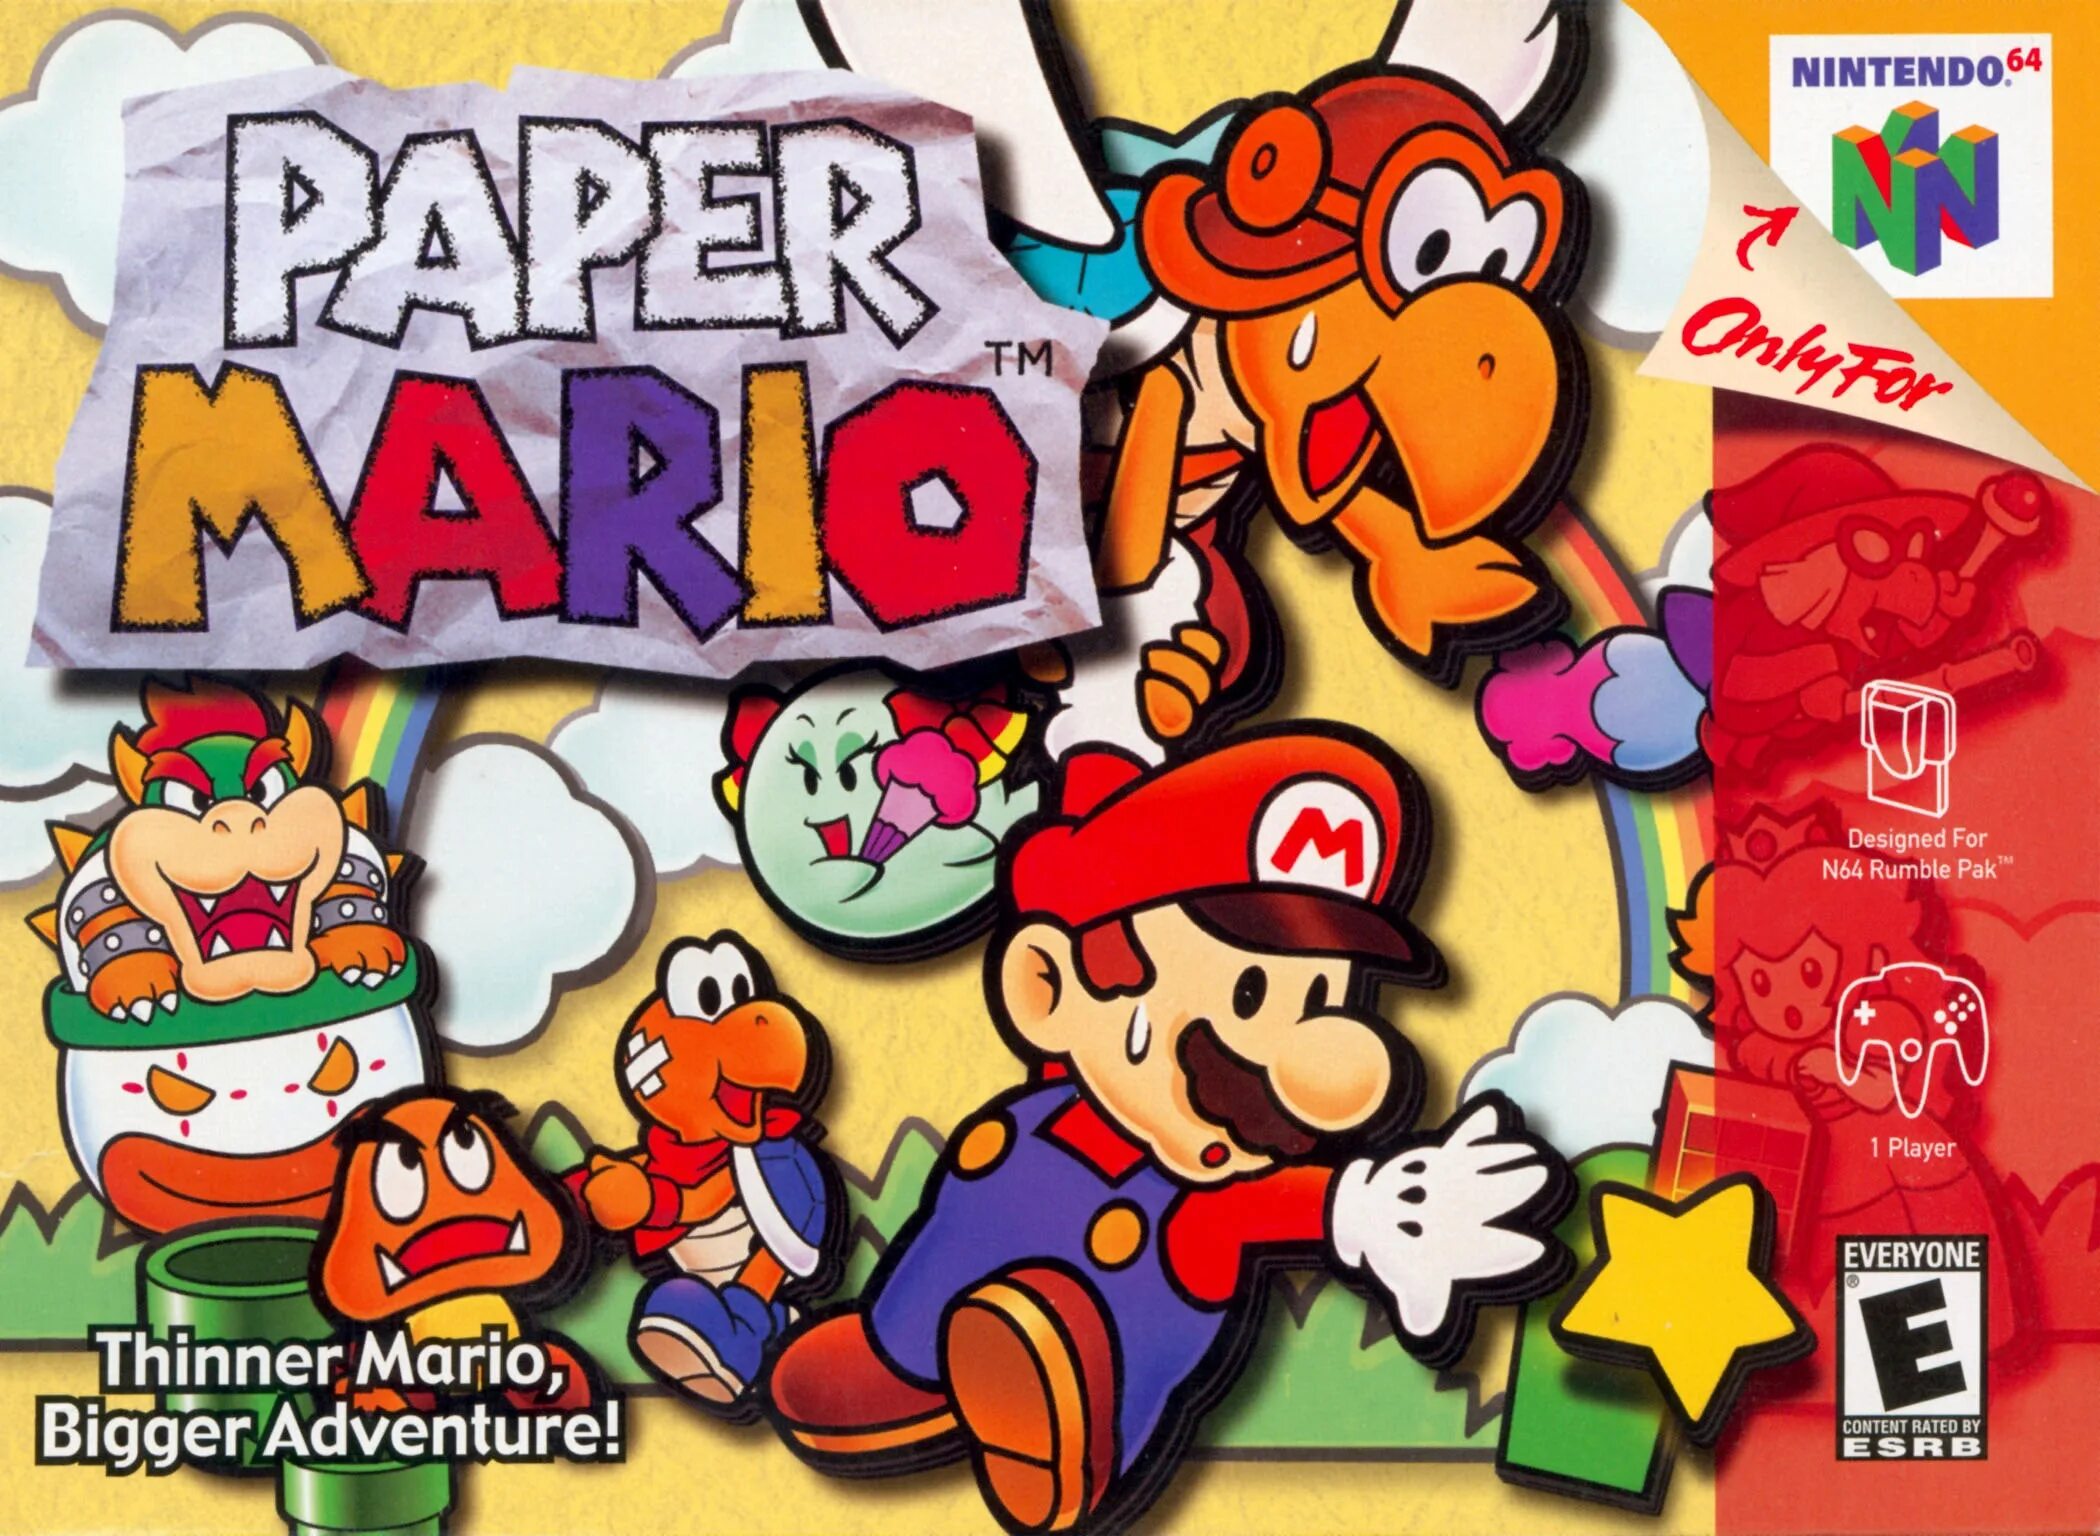 Paper Mario n64. Paper Mario Nintendo 64. Super Mario 64 Nintendo 64 обложка. Paper Mario n64 игра русский. Nintendo 64 mario